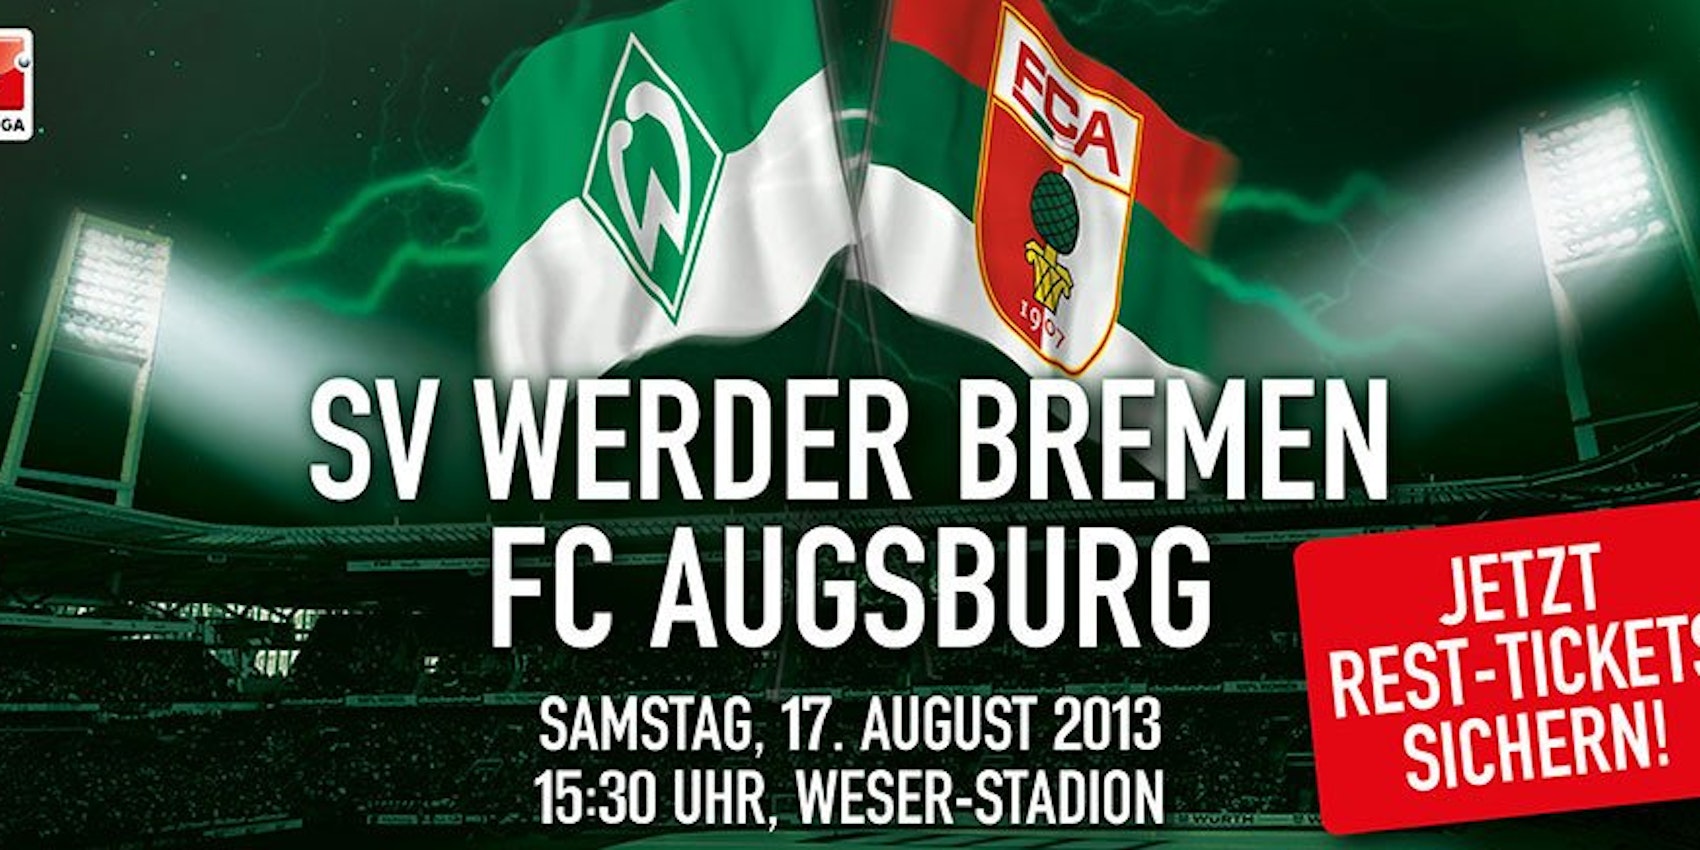 Bild der Internetseite von Werder Bremen.